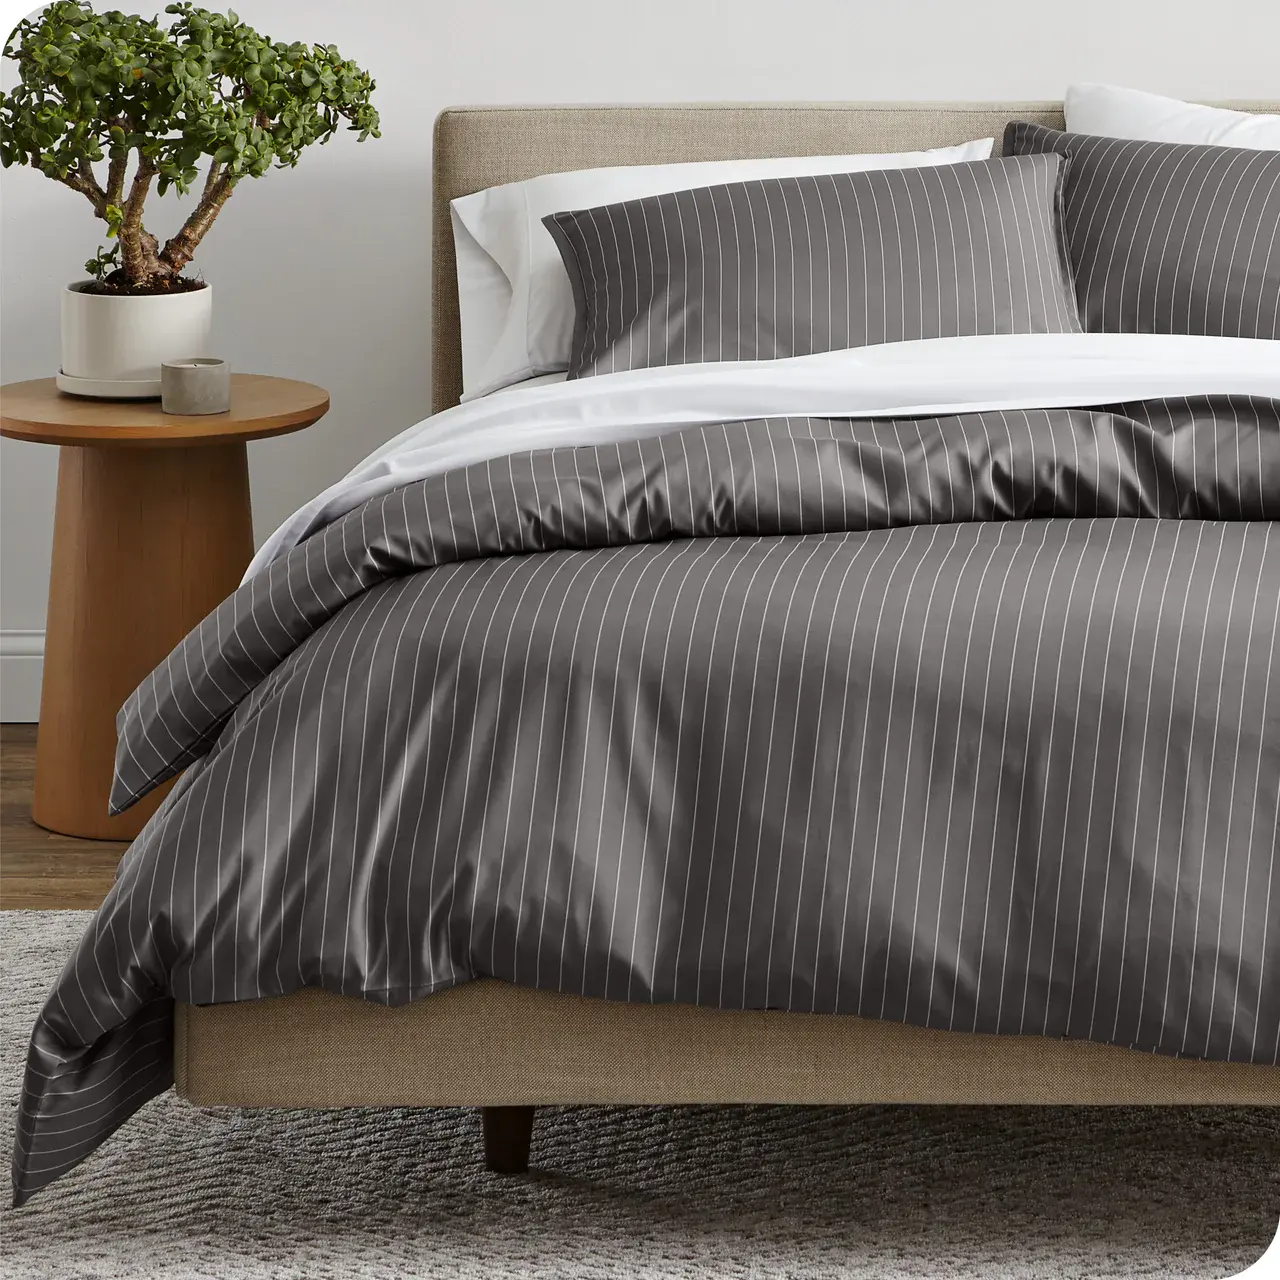 4 Piece Home Microfiber Duvet Cover Set Bed Sheet for Comforter Bedsheet Bedding Set